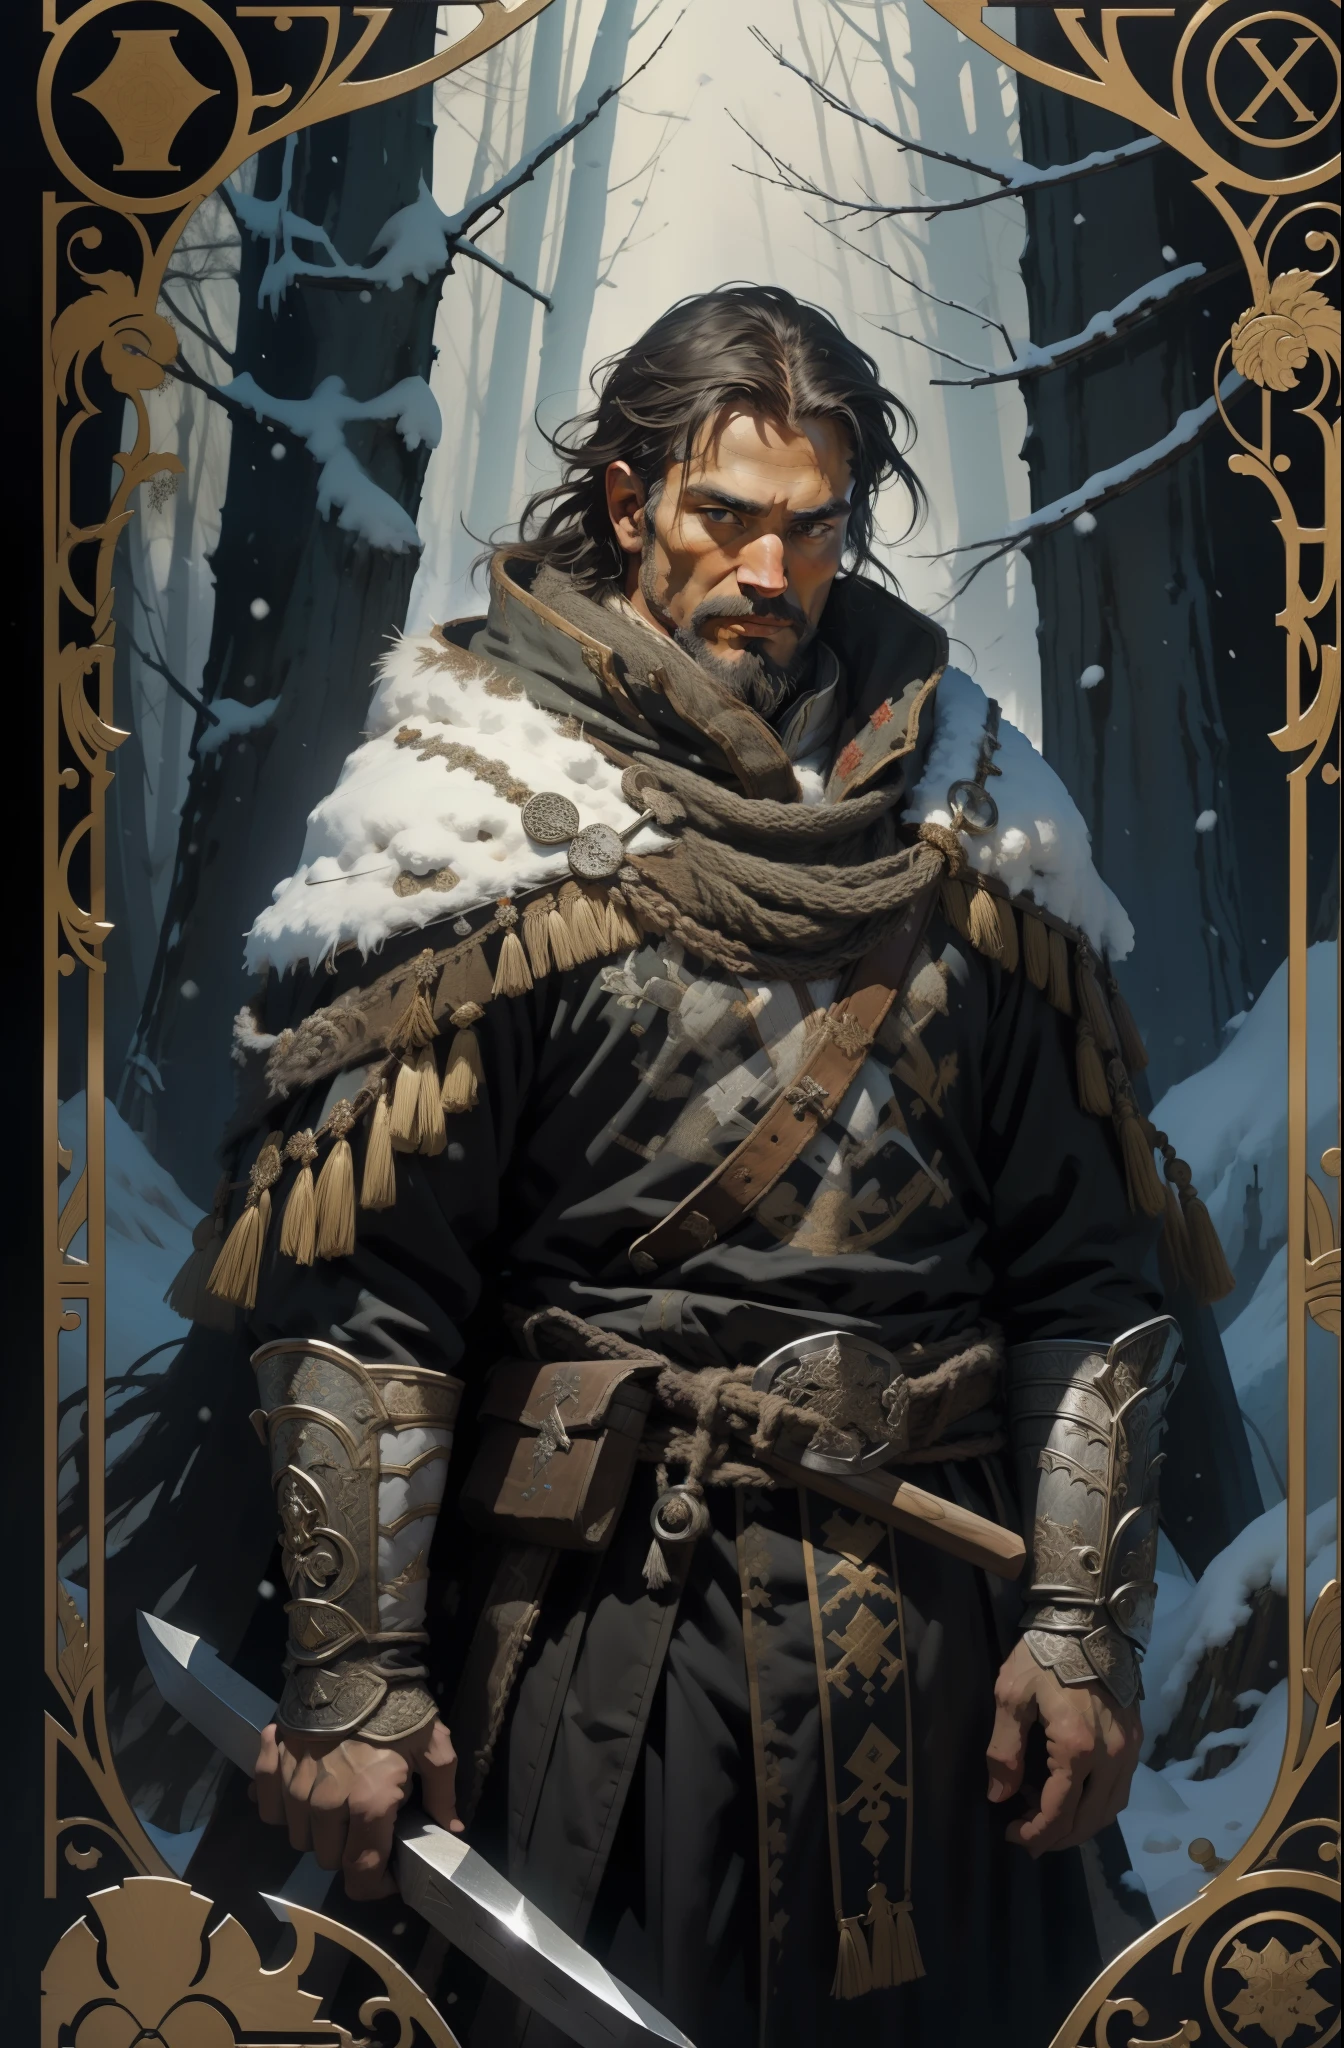 Мужчина, в традиционной одежде народов Севера, с топором в руках, фон снежного леса, Стиль Таро, средневековая узорчатая рамка